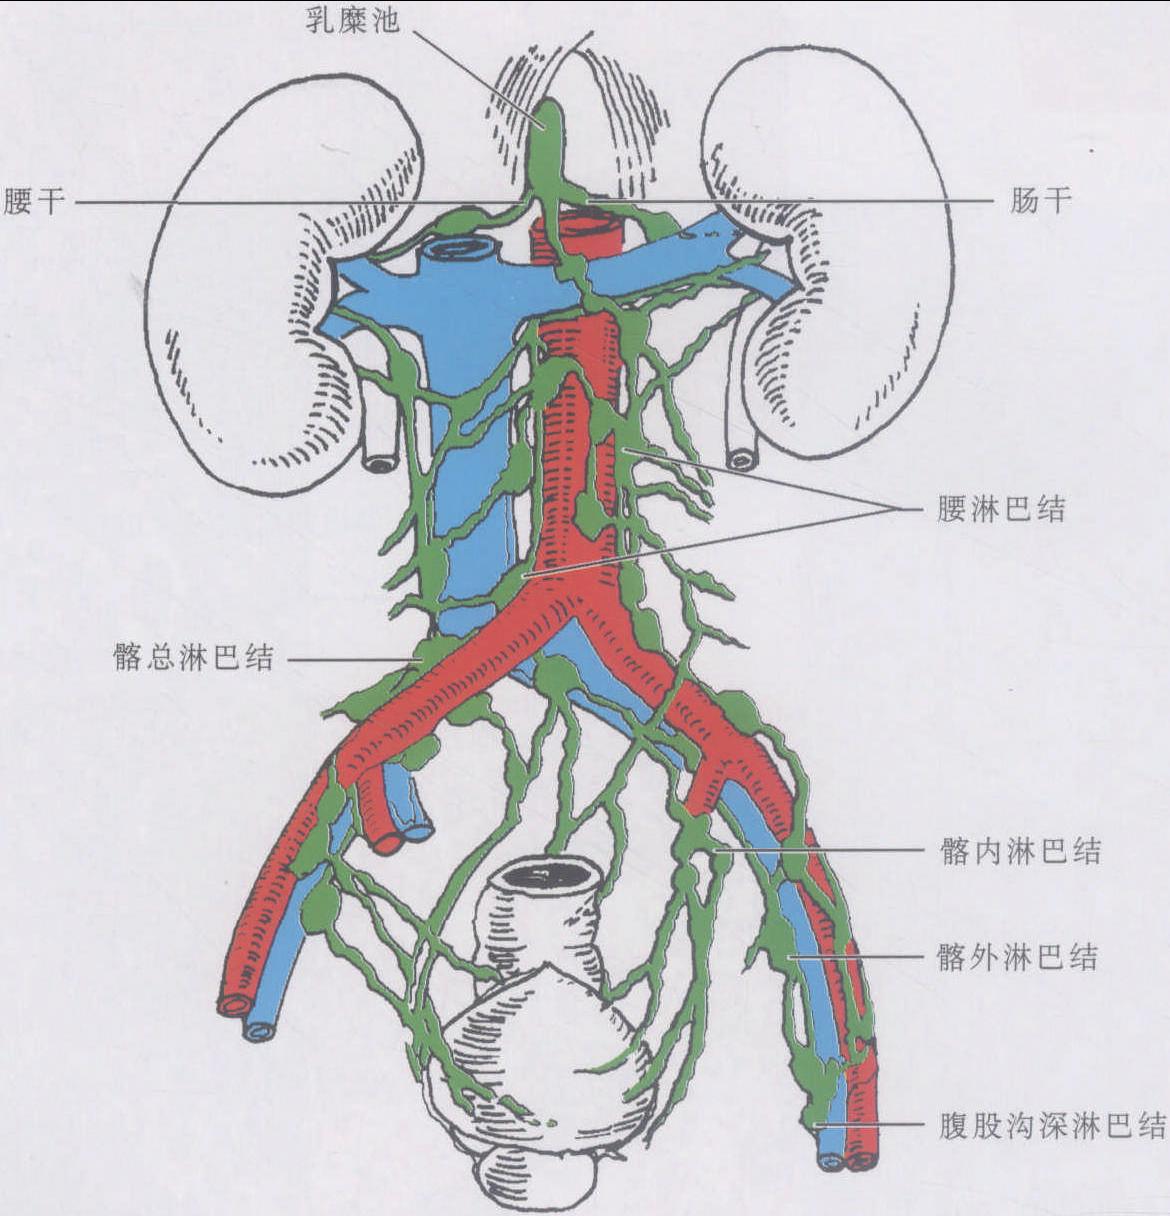 图1-47 直肠和肛管黏膜(2)-妇产科临床解剖学-医学